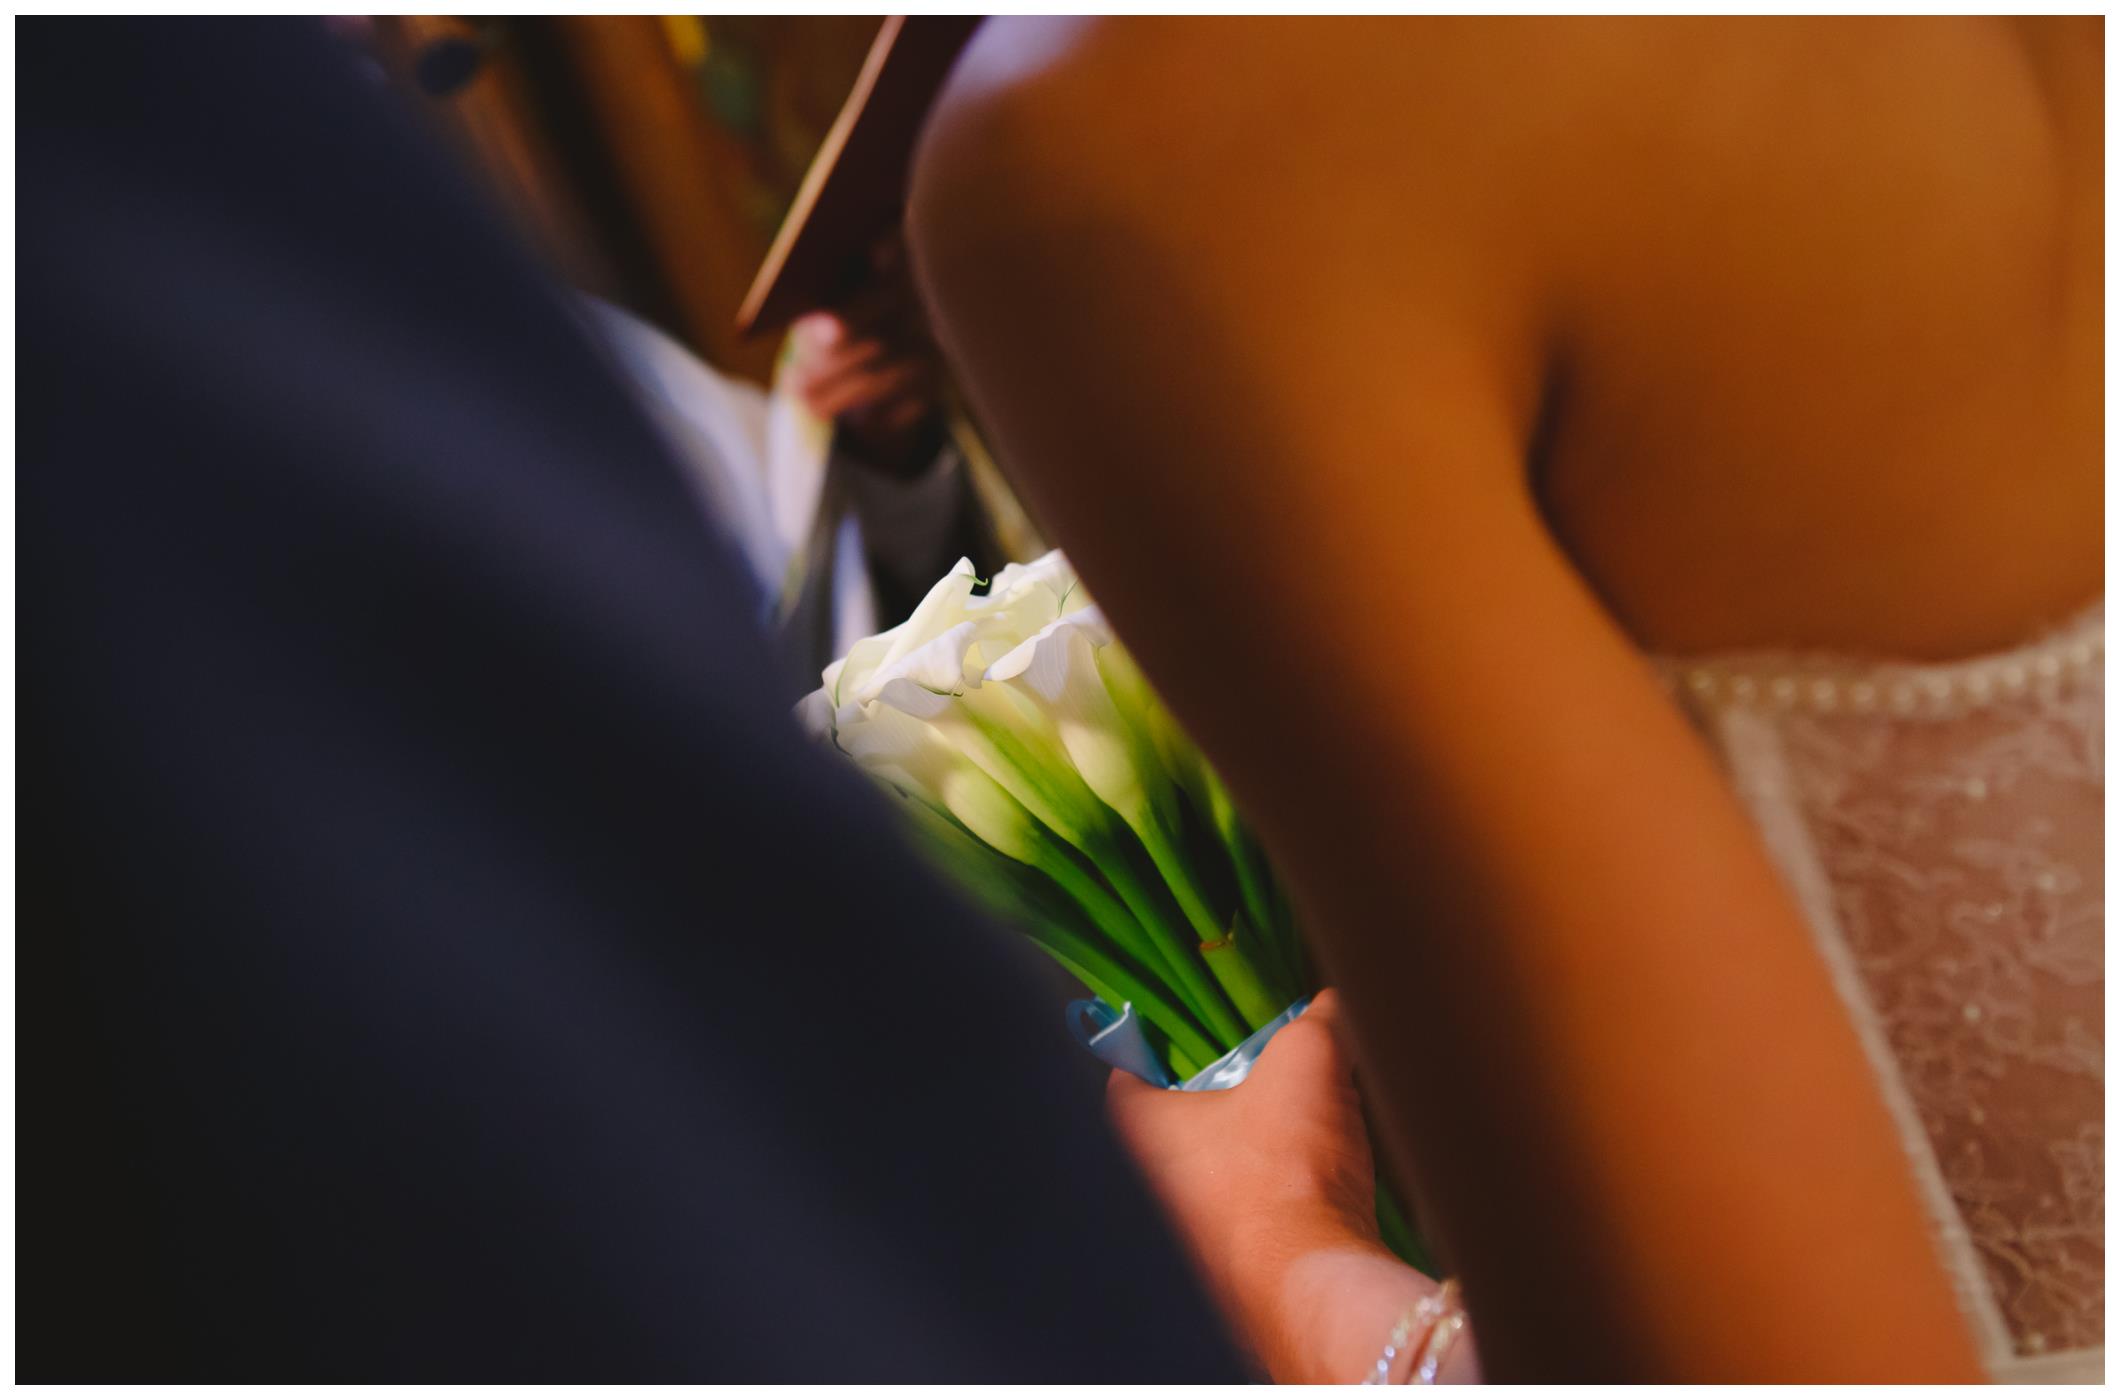 φωτογραφοι γαμου Κορινθος,φωτογράφοι γάμου Κόρινθος